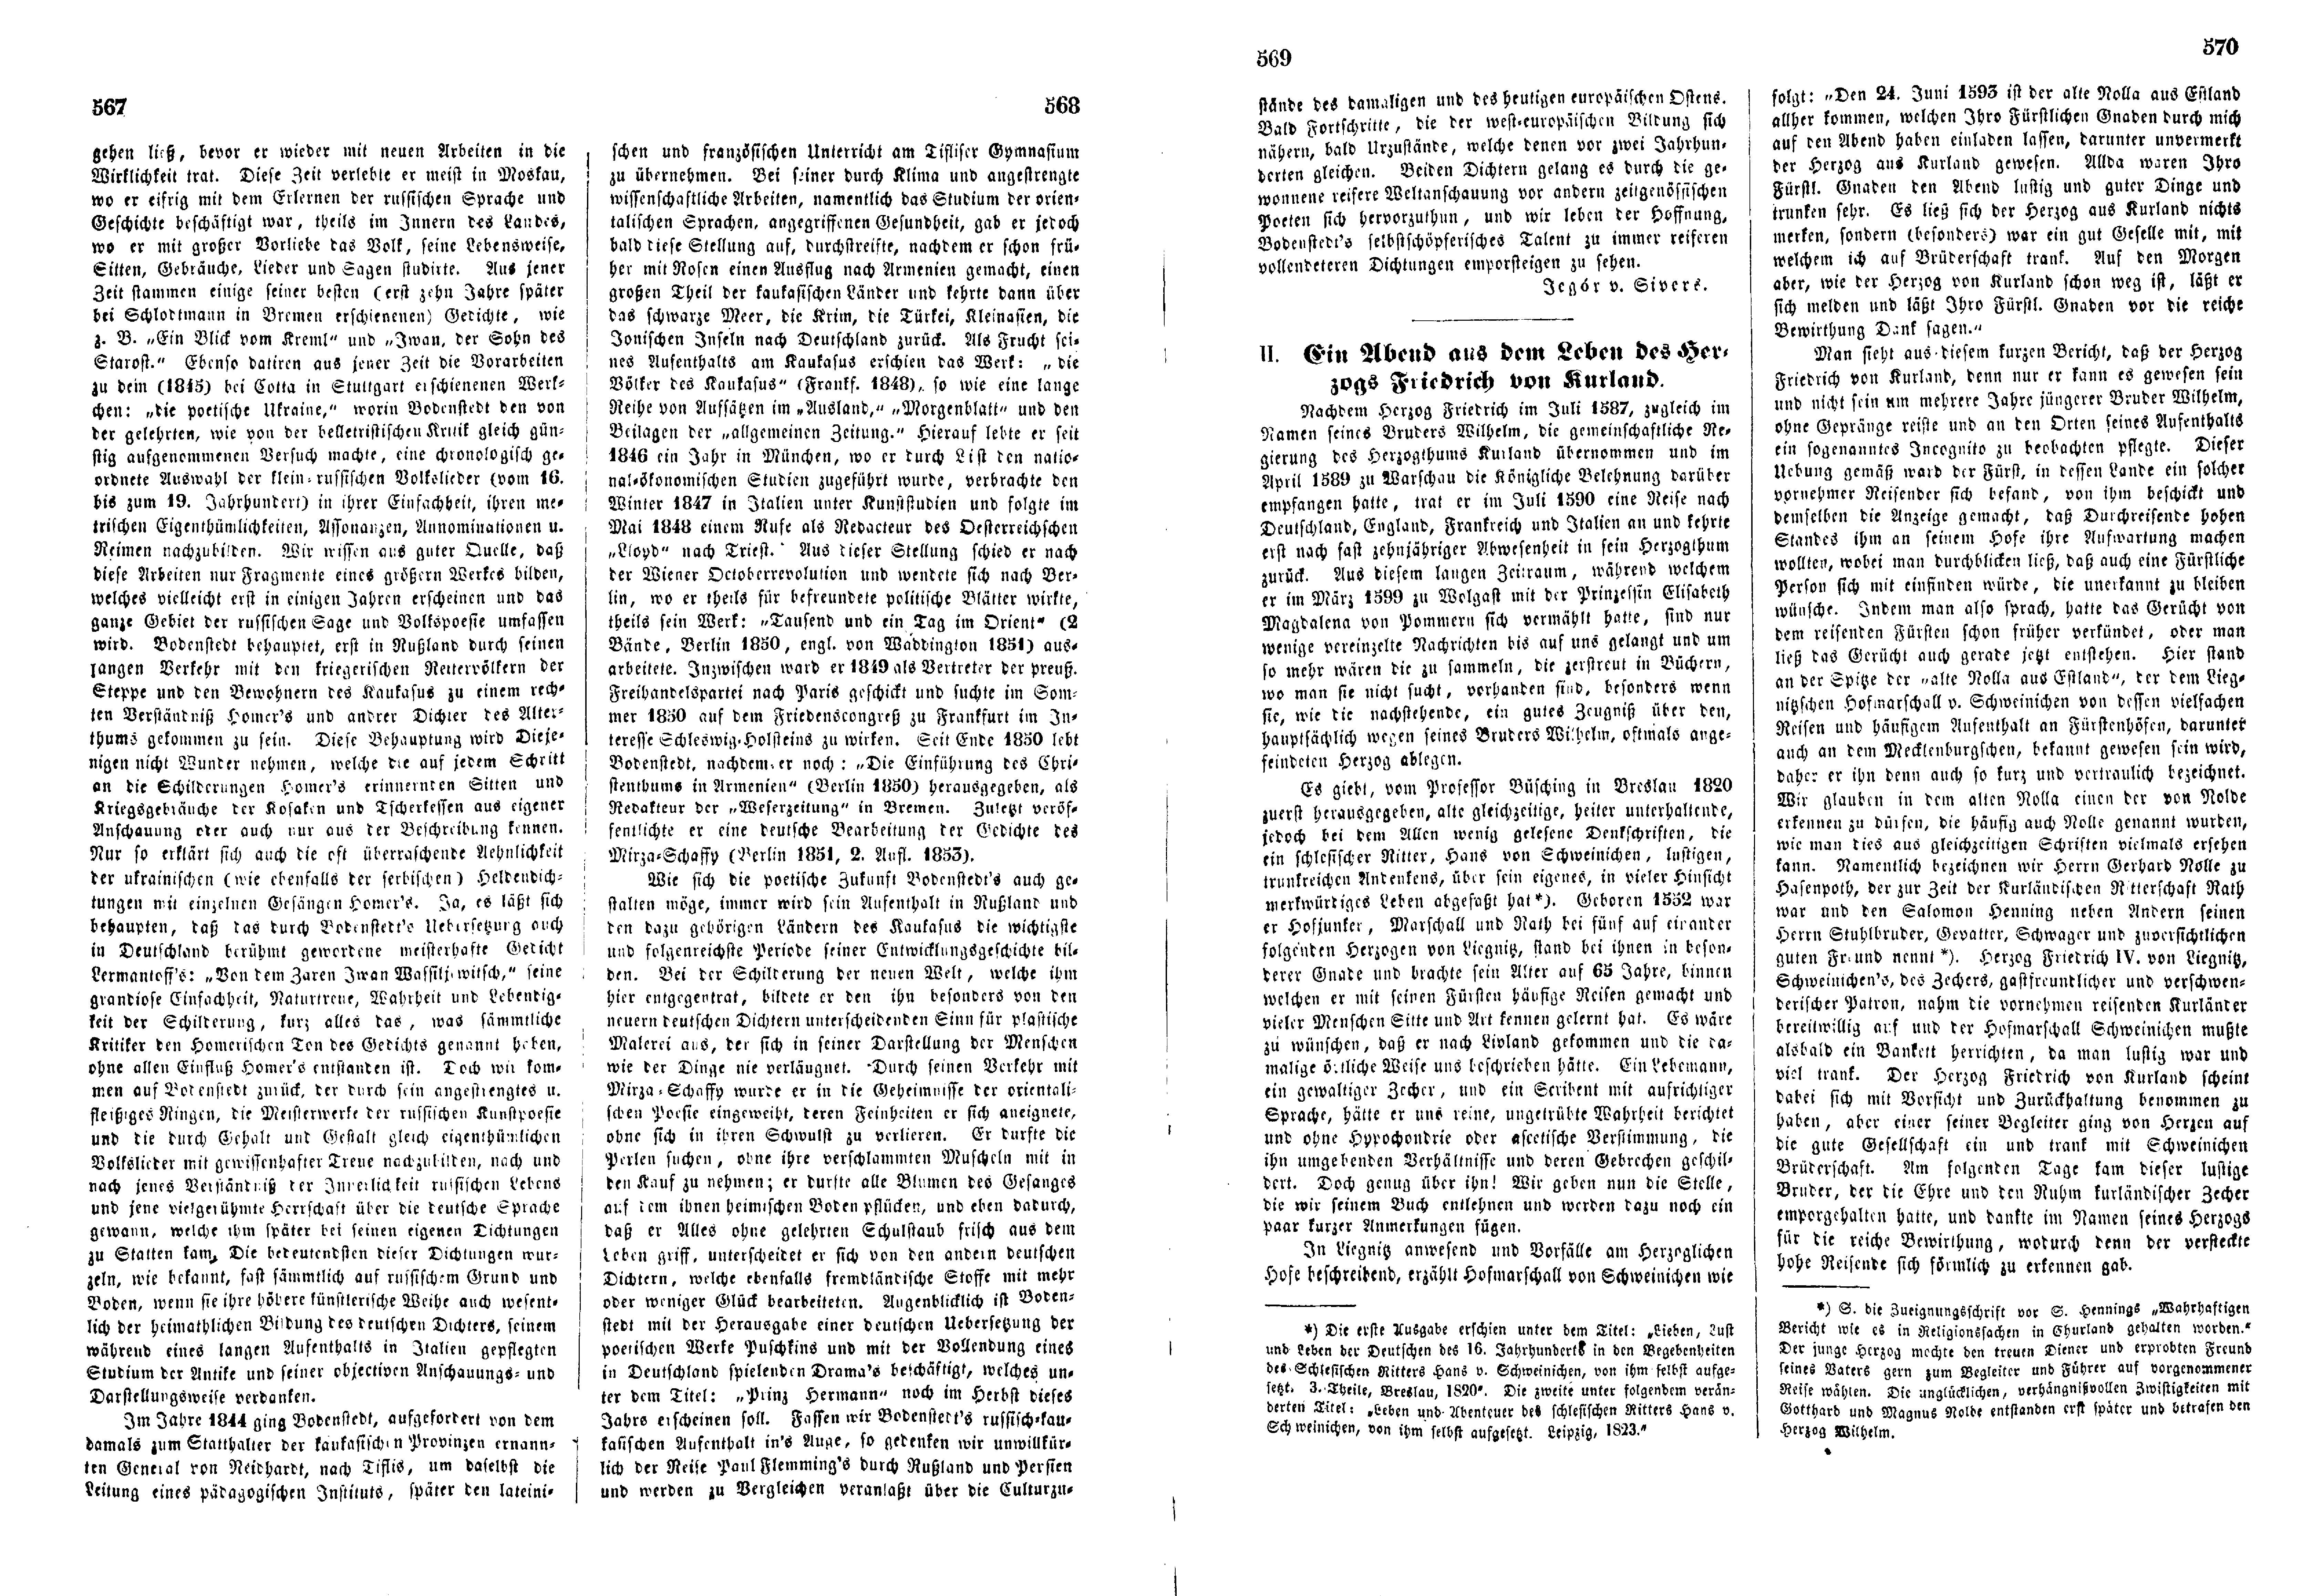 Friedrich Martin Bodenstedt (1855) | 2. (567-570) Main body of text